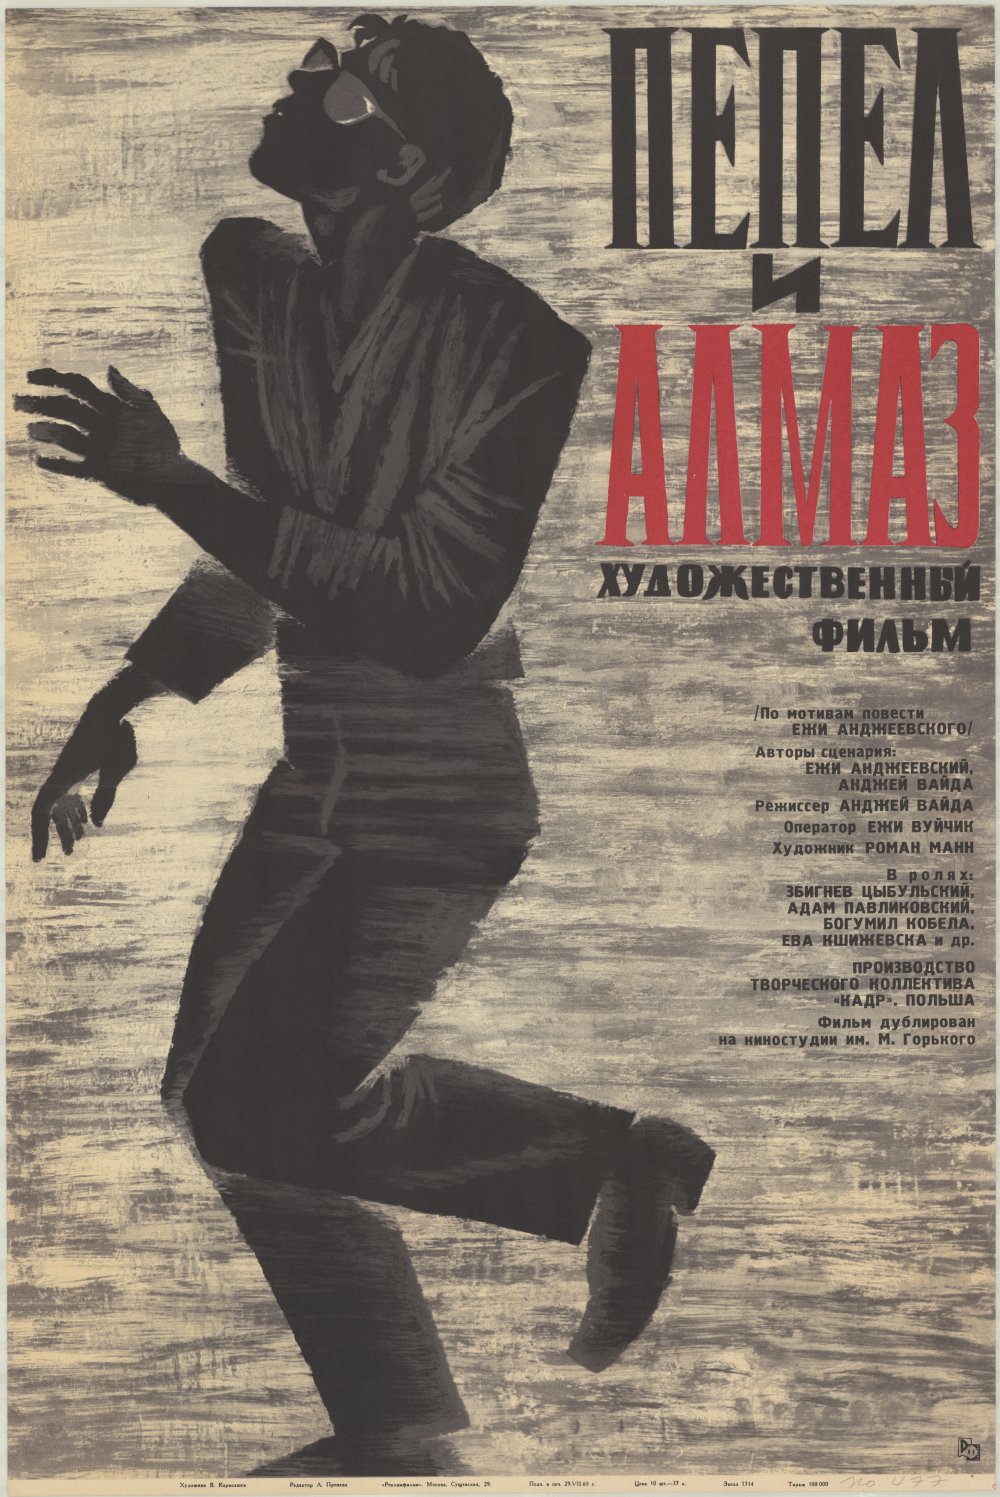 Ashes and Diamonds (1958): Soviet poster by W. Karakaszew, 1965